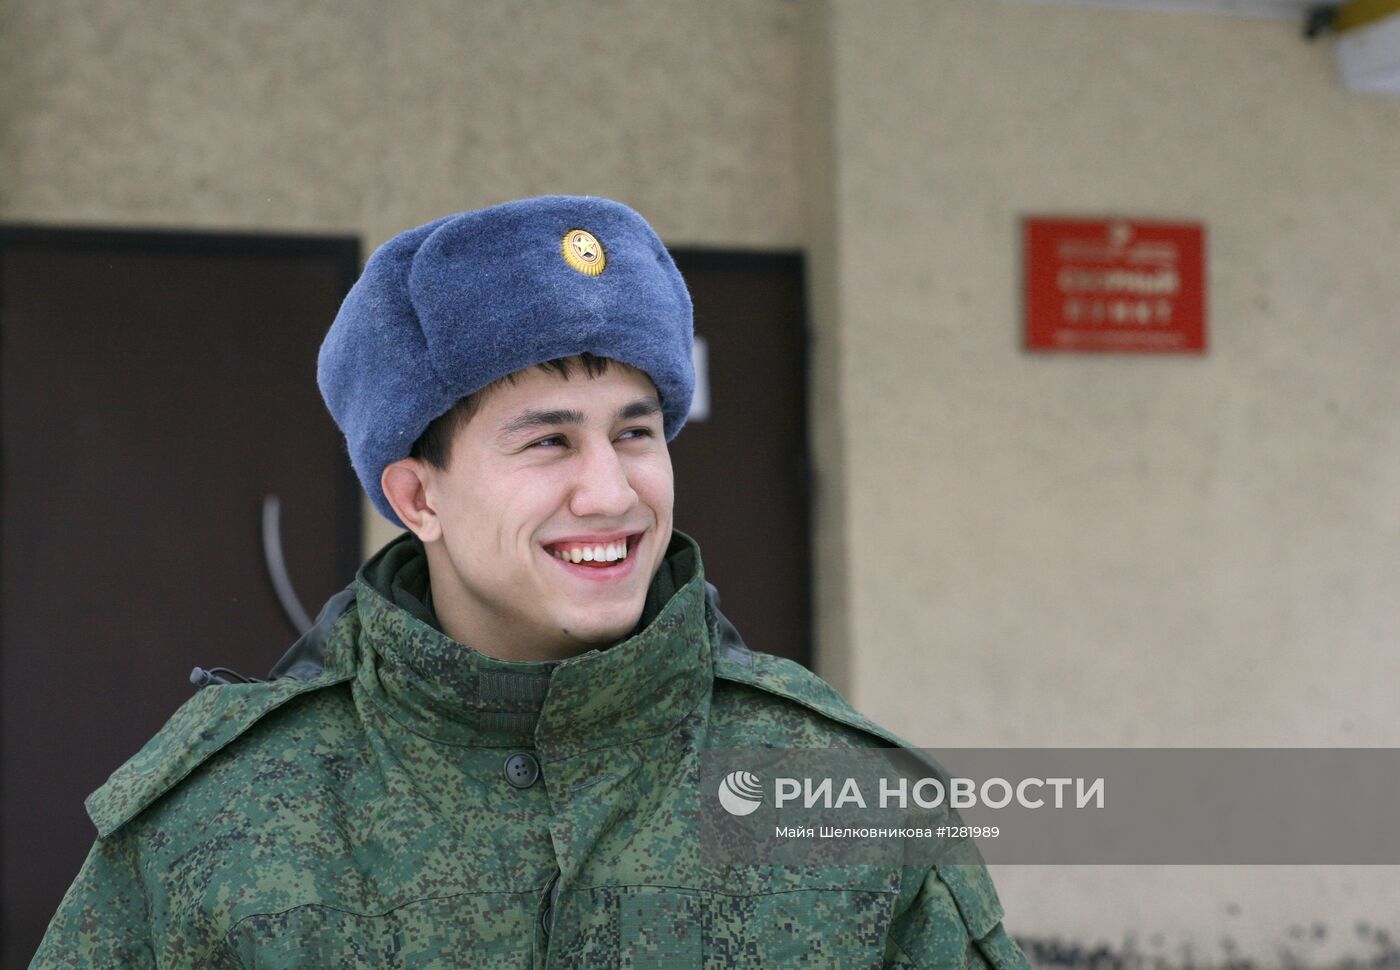 Олимпийский чемпион Роман Власов отправлен в армию по призыву